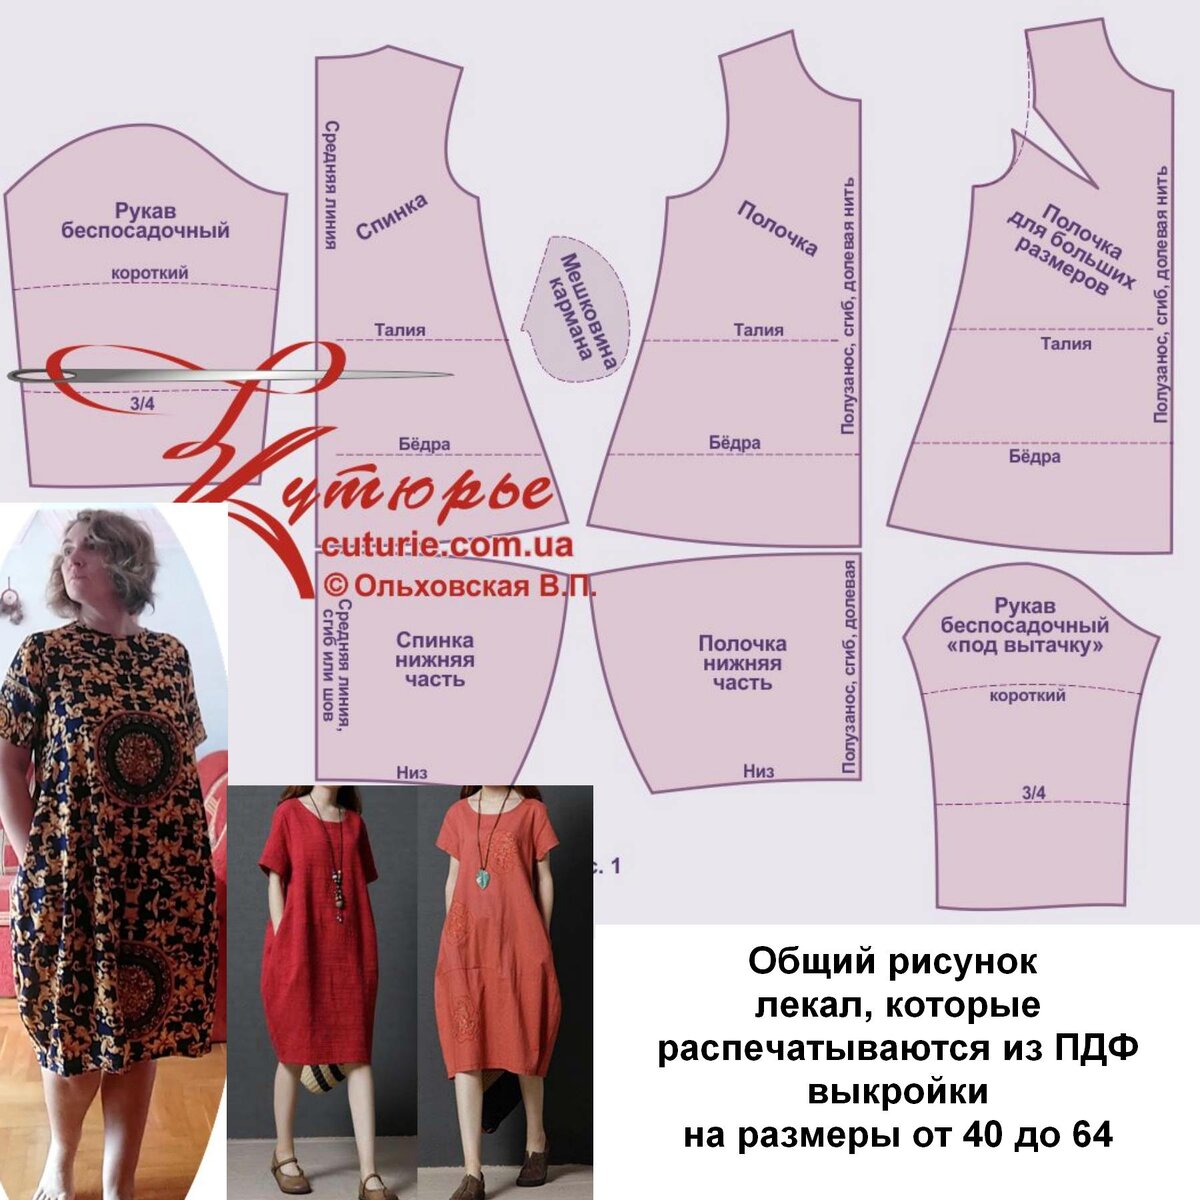 Детали платья - идеи моделирования от Анастасии Корфиати